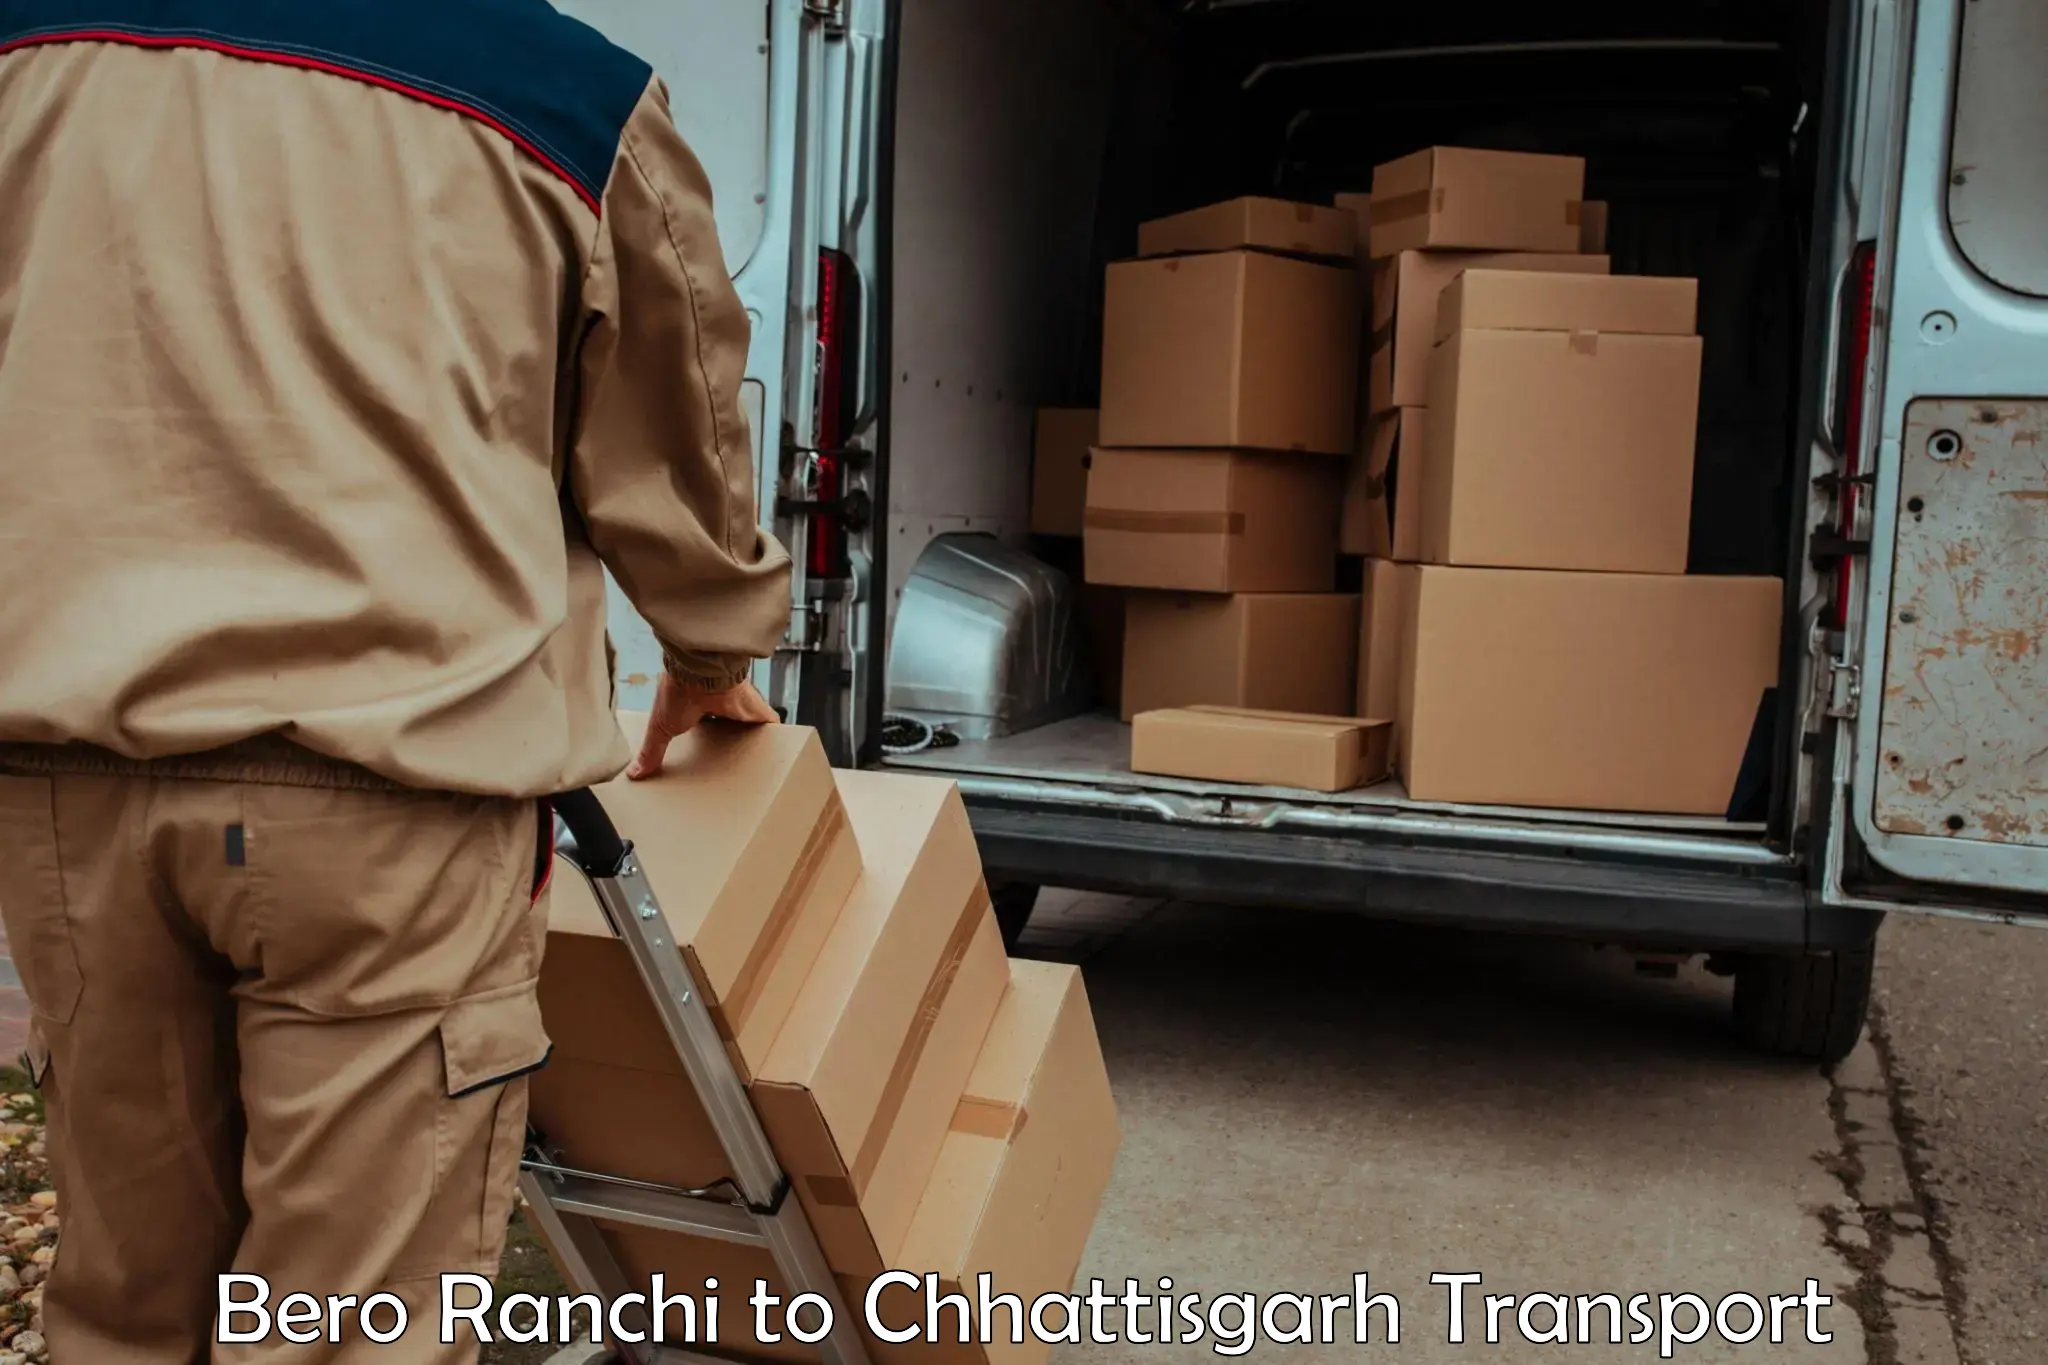 Transportation services in Bero Ranchi to Raigarh Chhattisgarh